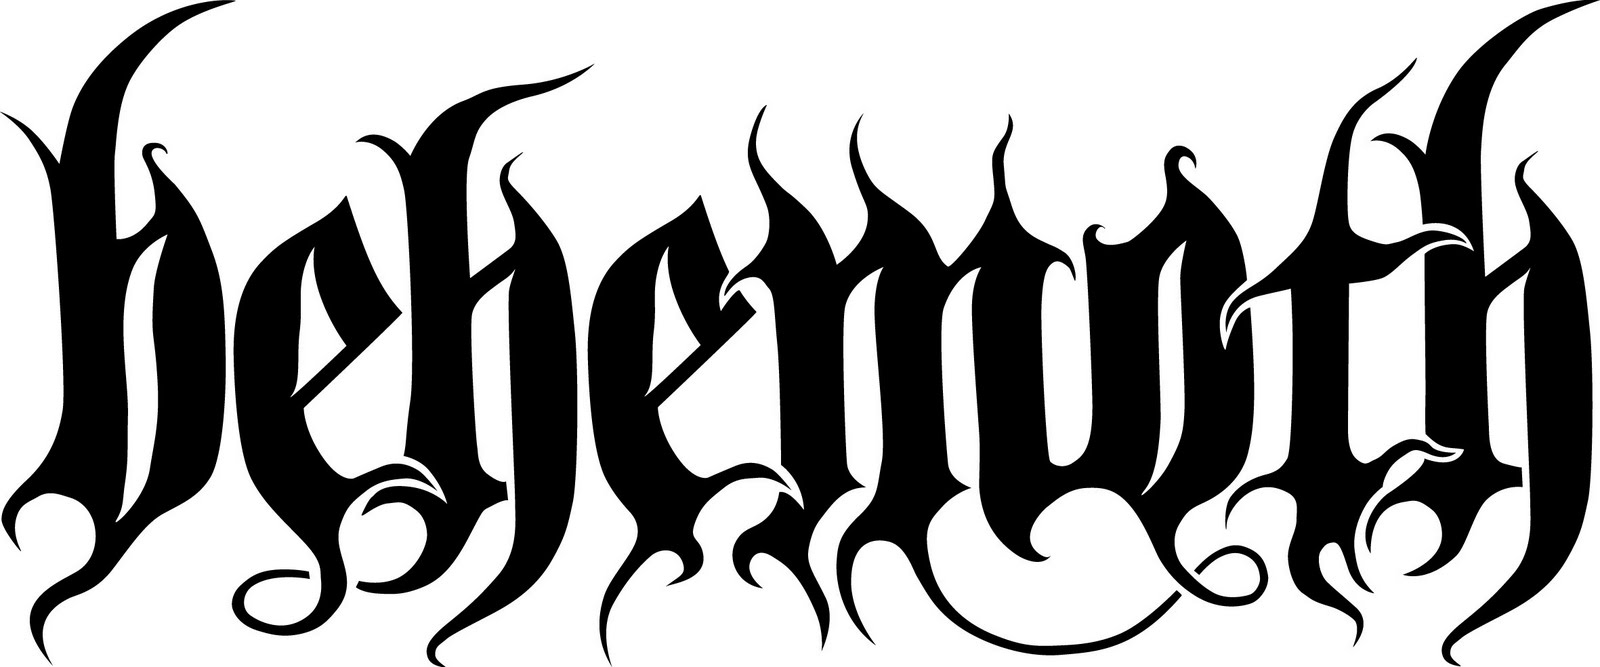 Behemoth_logo